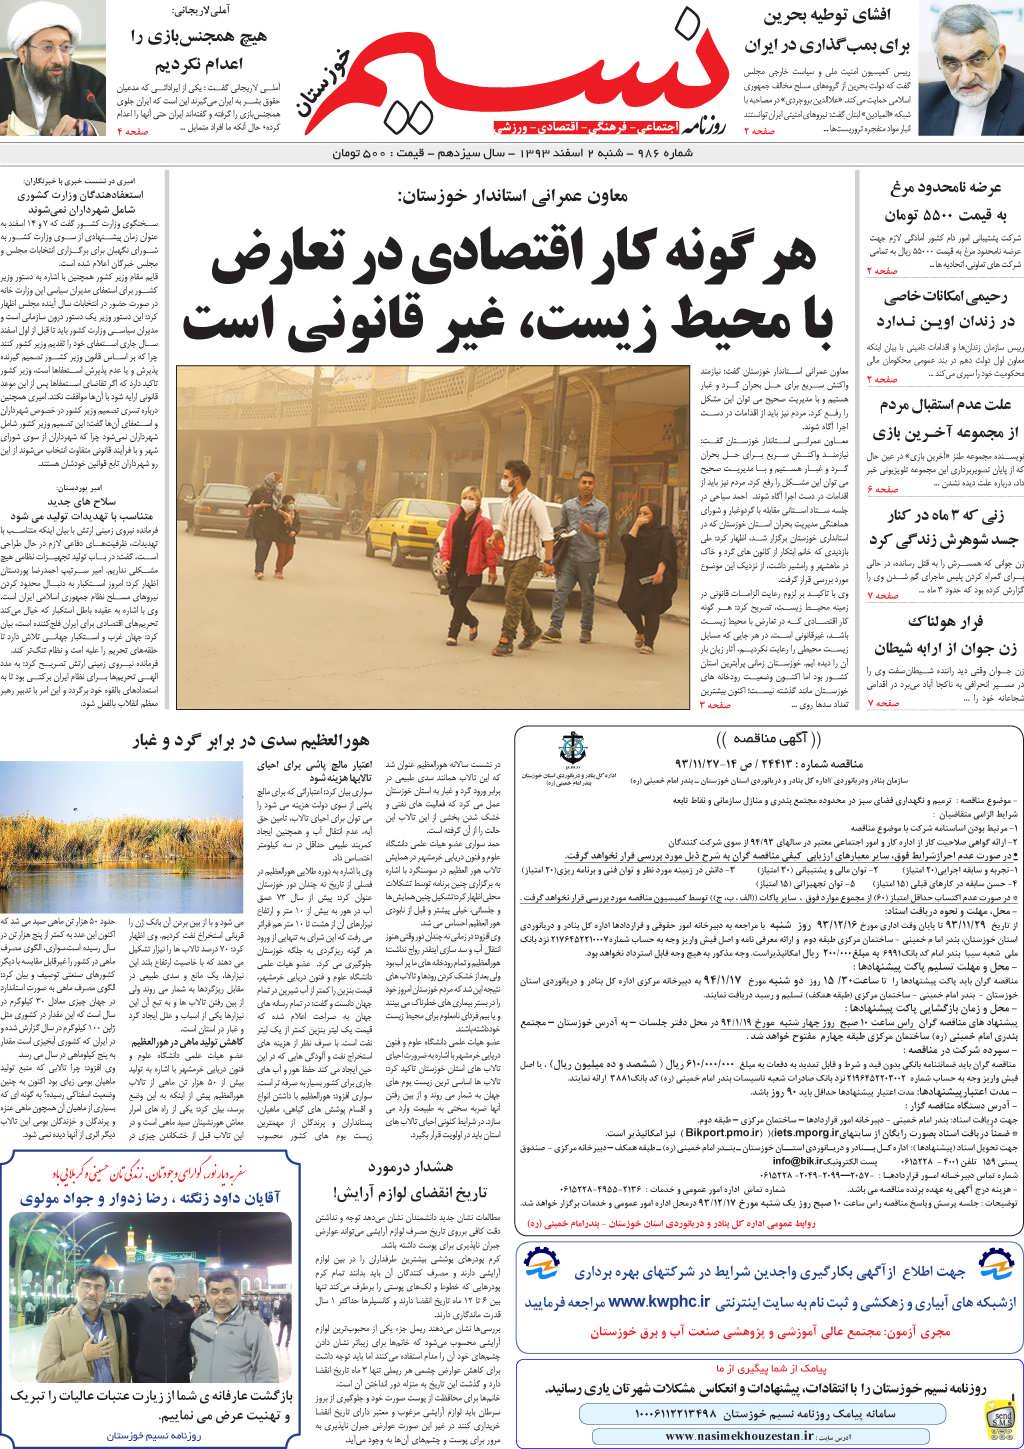 صفحه اصلی روزنامه نسیم شماره 986